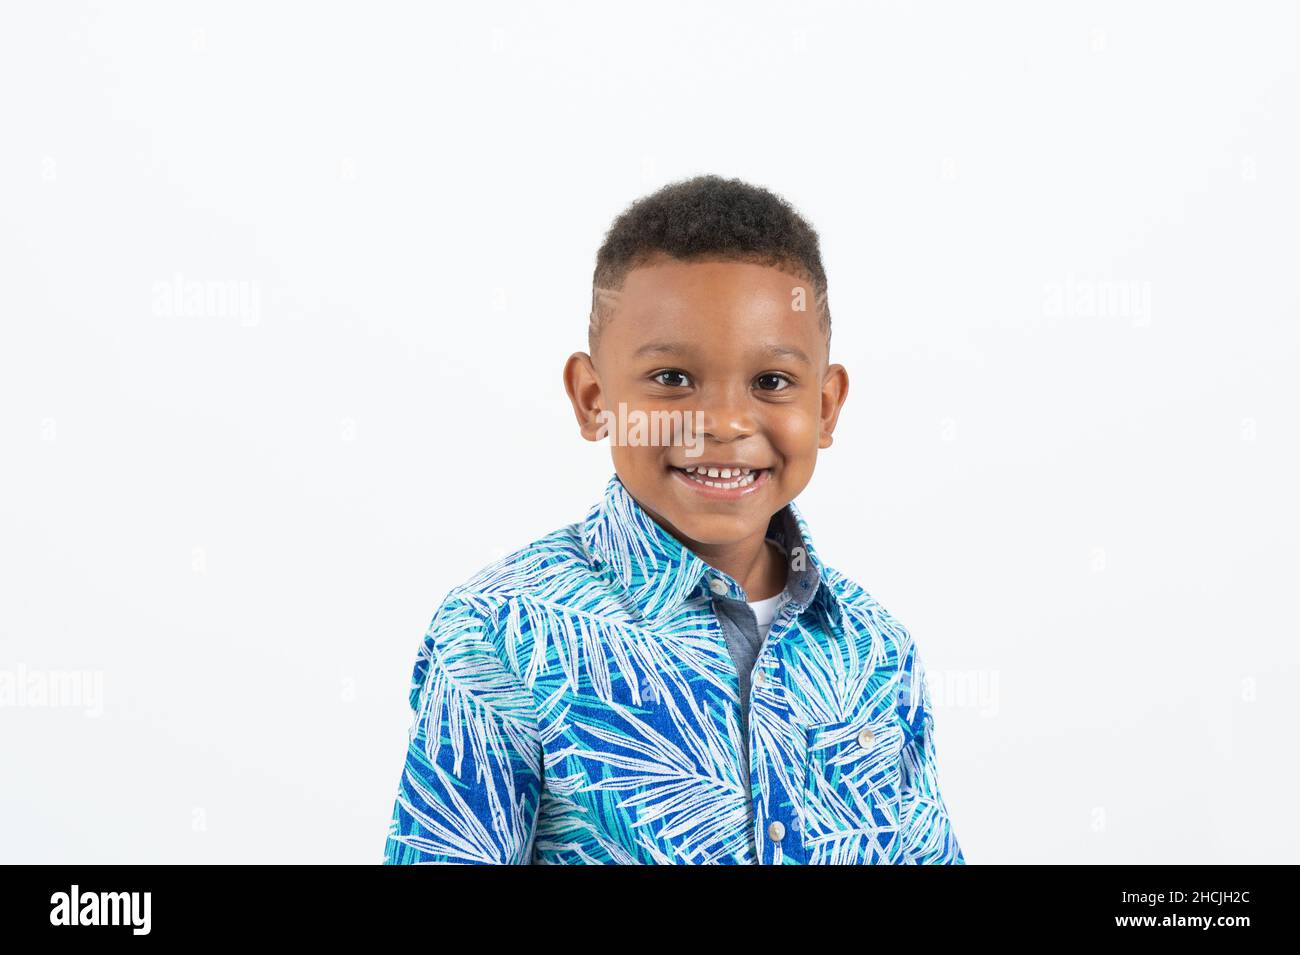 Primer plano retrato de un niño de 4 o 5 años, sonriente, fondo blanco, Foto de stock